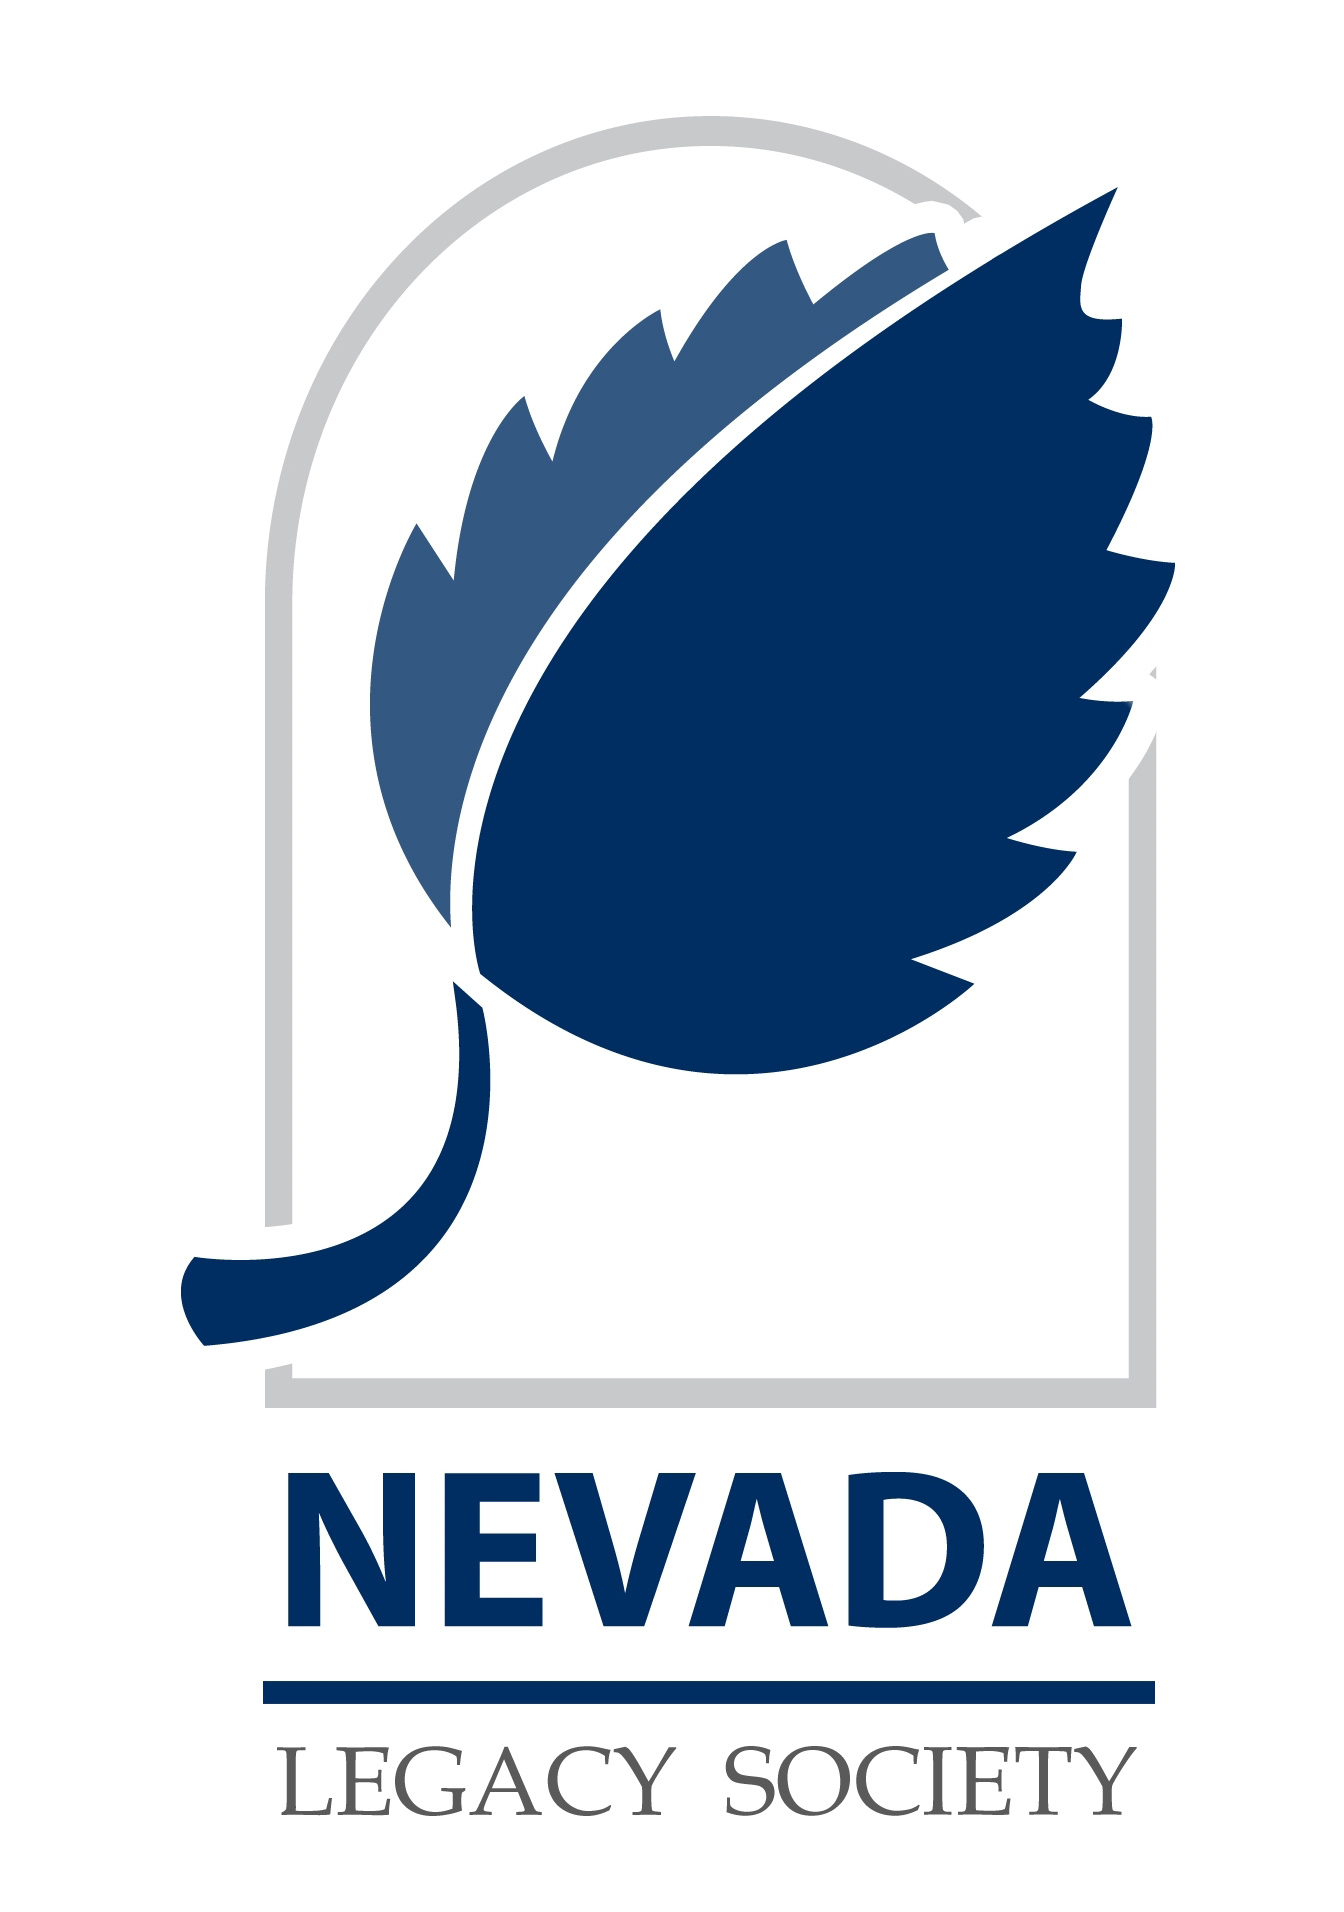 Nevada Legacy Society